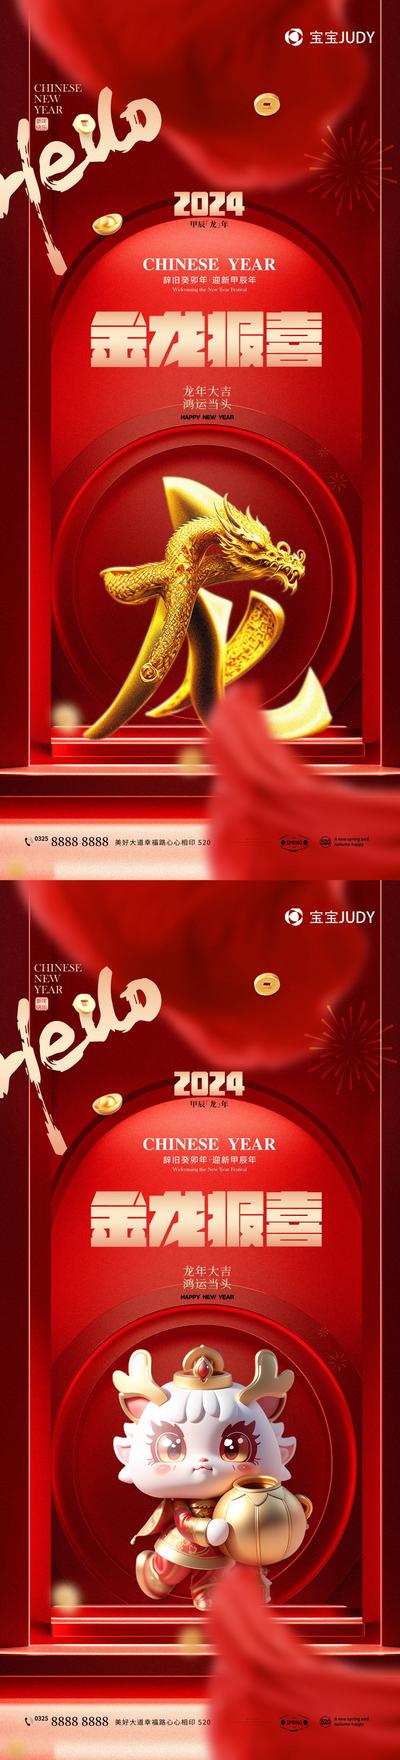 南门网 广告 海报 新年 龙年 元旦 2024 春节 龙 元素 立体 文字 系列 品质